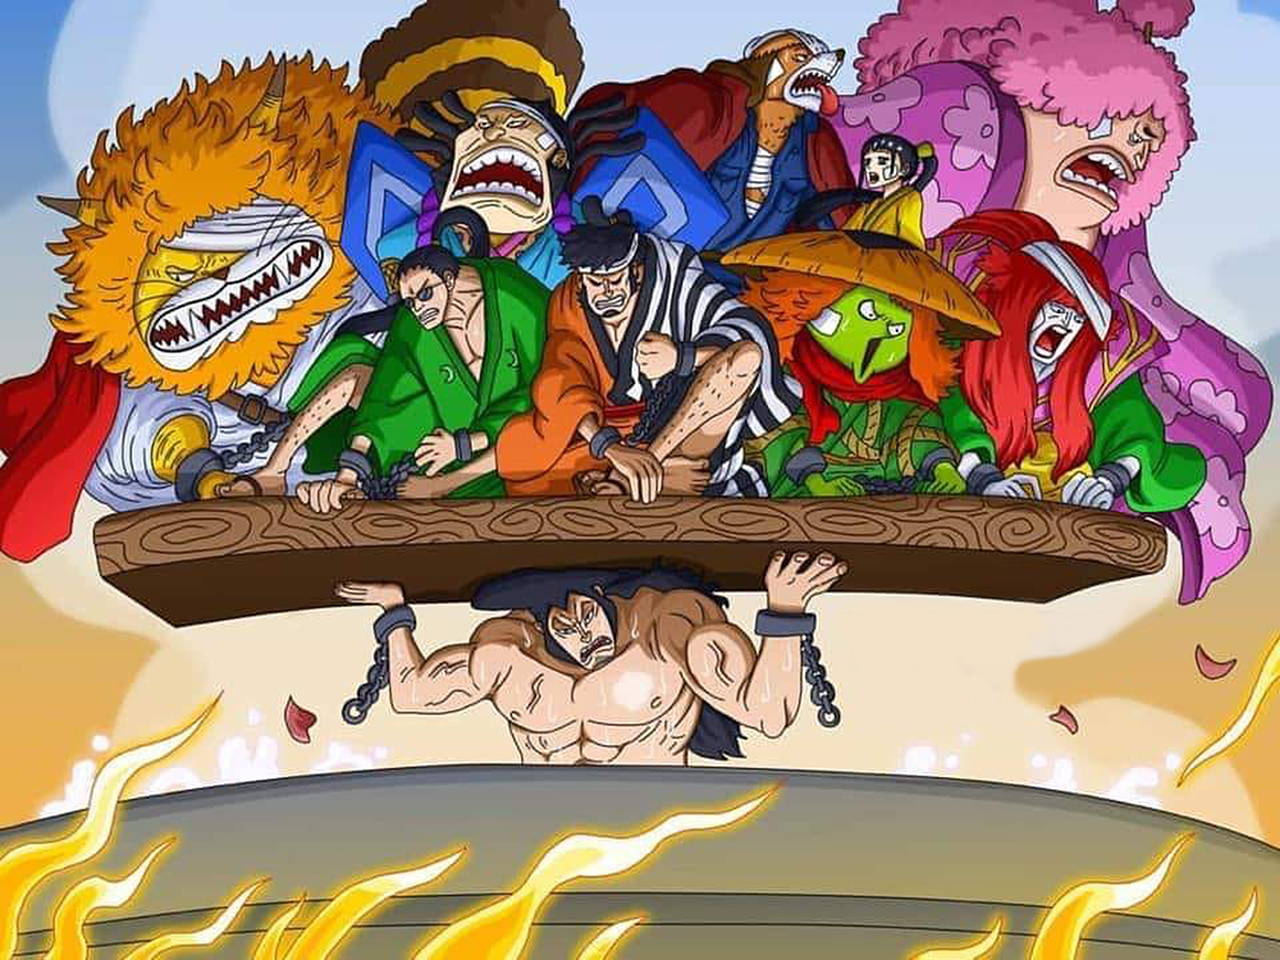 Poneglyph - Vật phẩm quý giá và bí ẩn trong thế giới One Piece. Những bức ảnh liên quan đến Poneglyph sẽ giúp bạn hiểu rõ hơn về tầm quan trọng của chúng và các hành trình tìm kiếm chúng của các nhân vật trong One Piece.